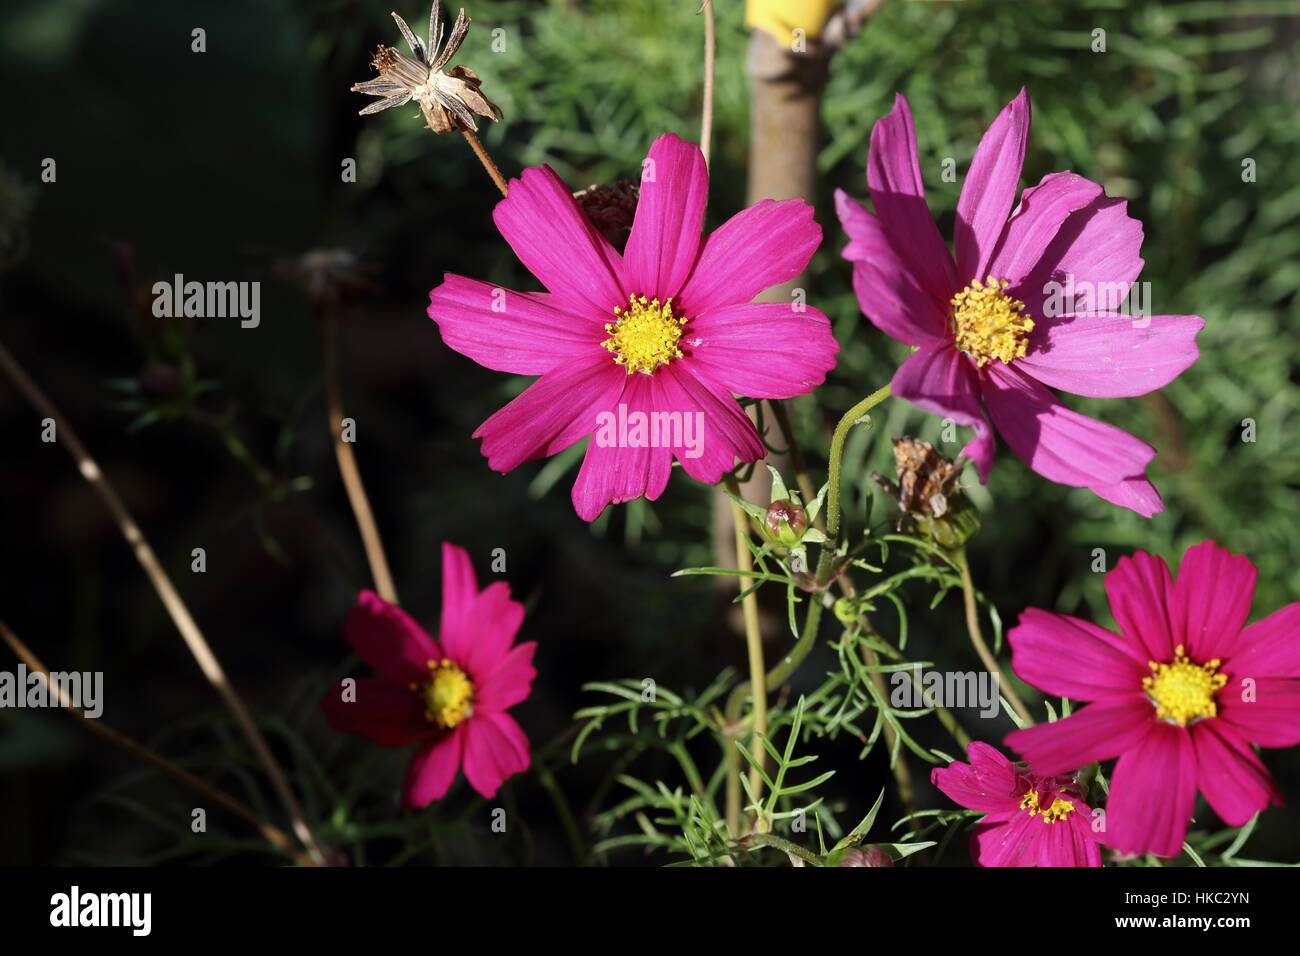 Nahaufnahme von Hot Pink Cosmos Bipinnatus oder bekannt als mexikanische Aster, schneiden Blatt Kosmos in voller Blüte Stockfoto